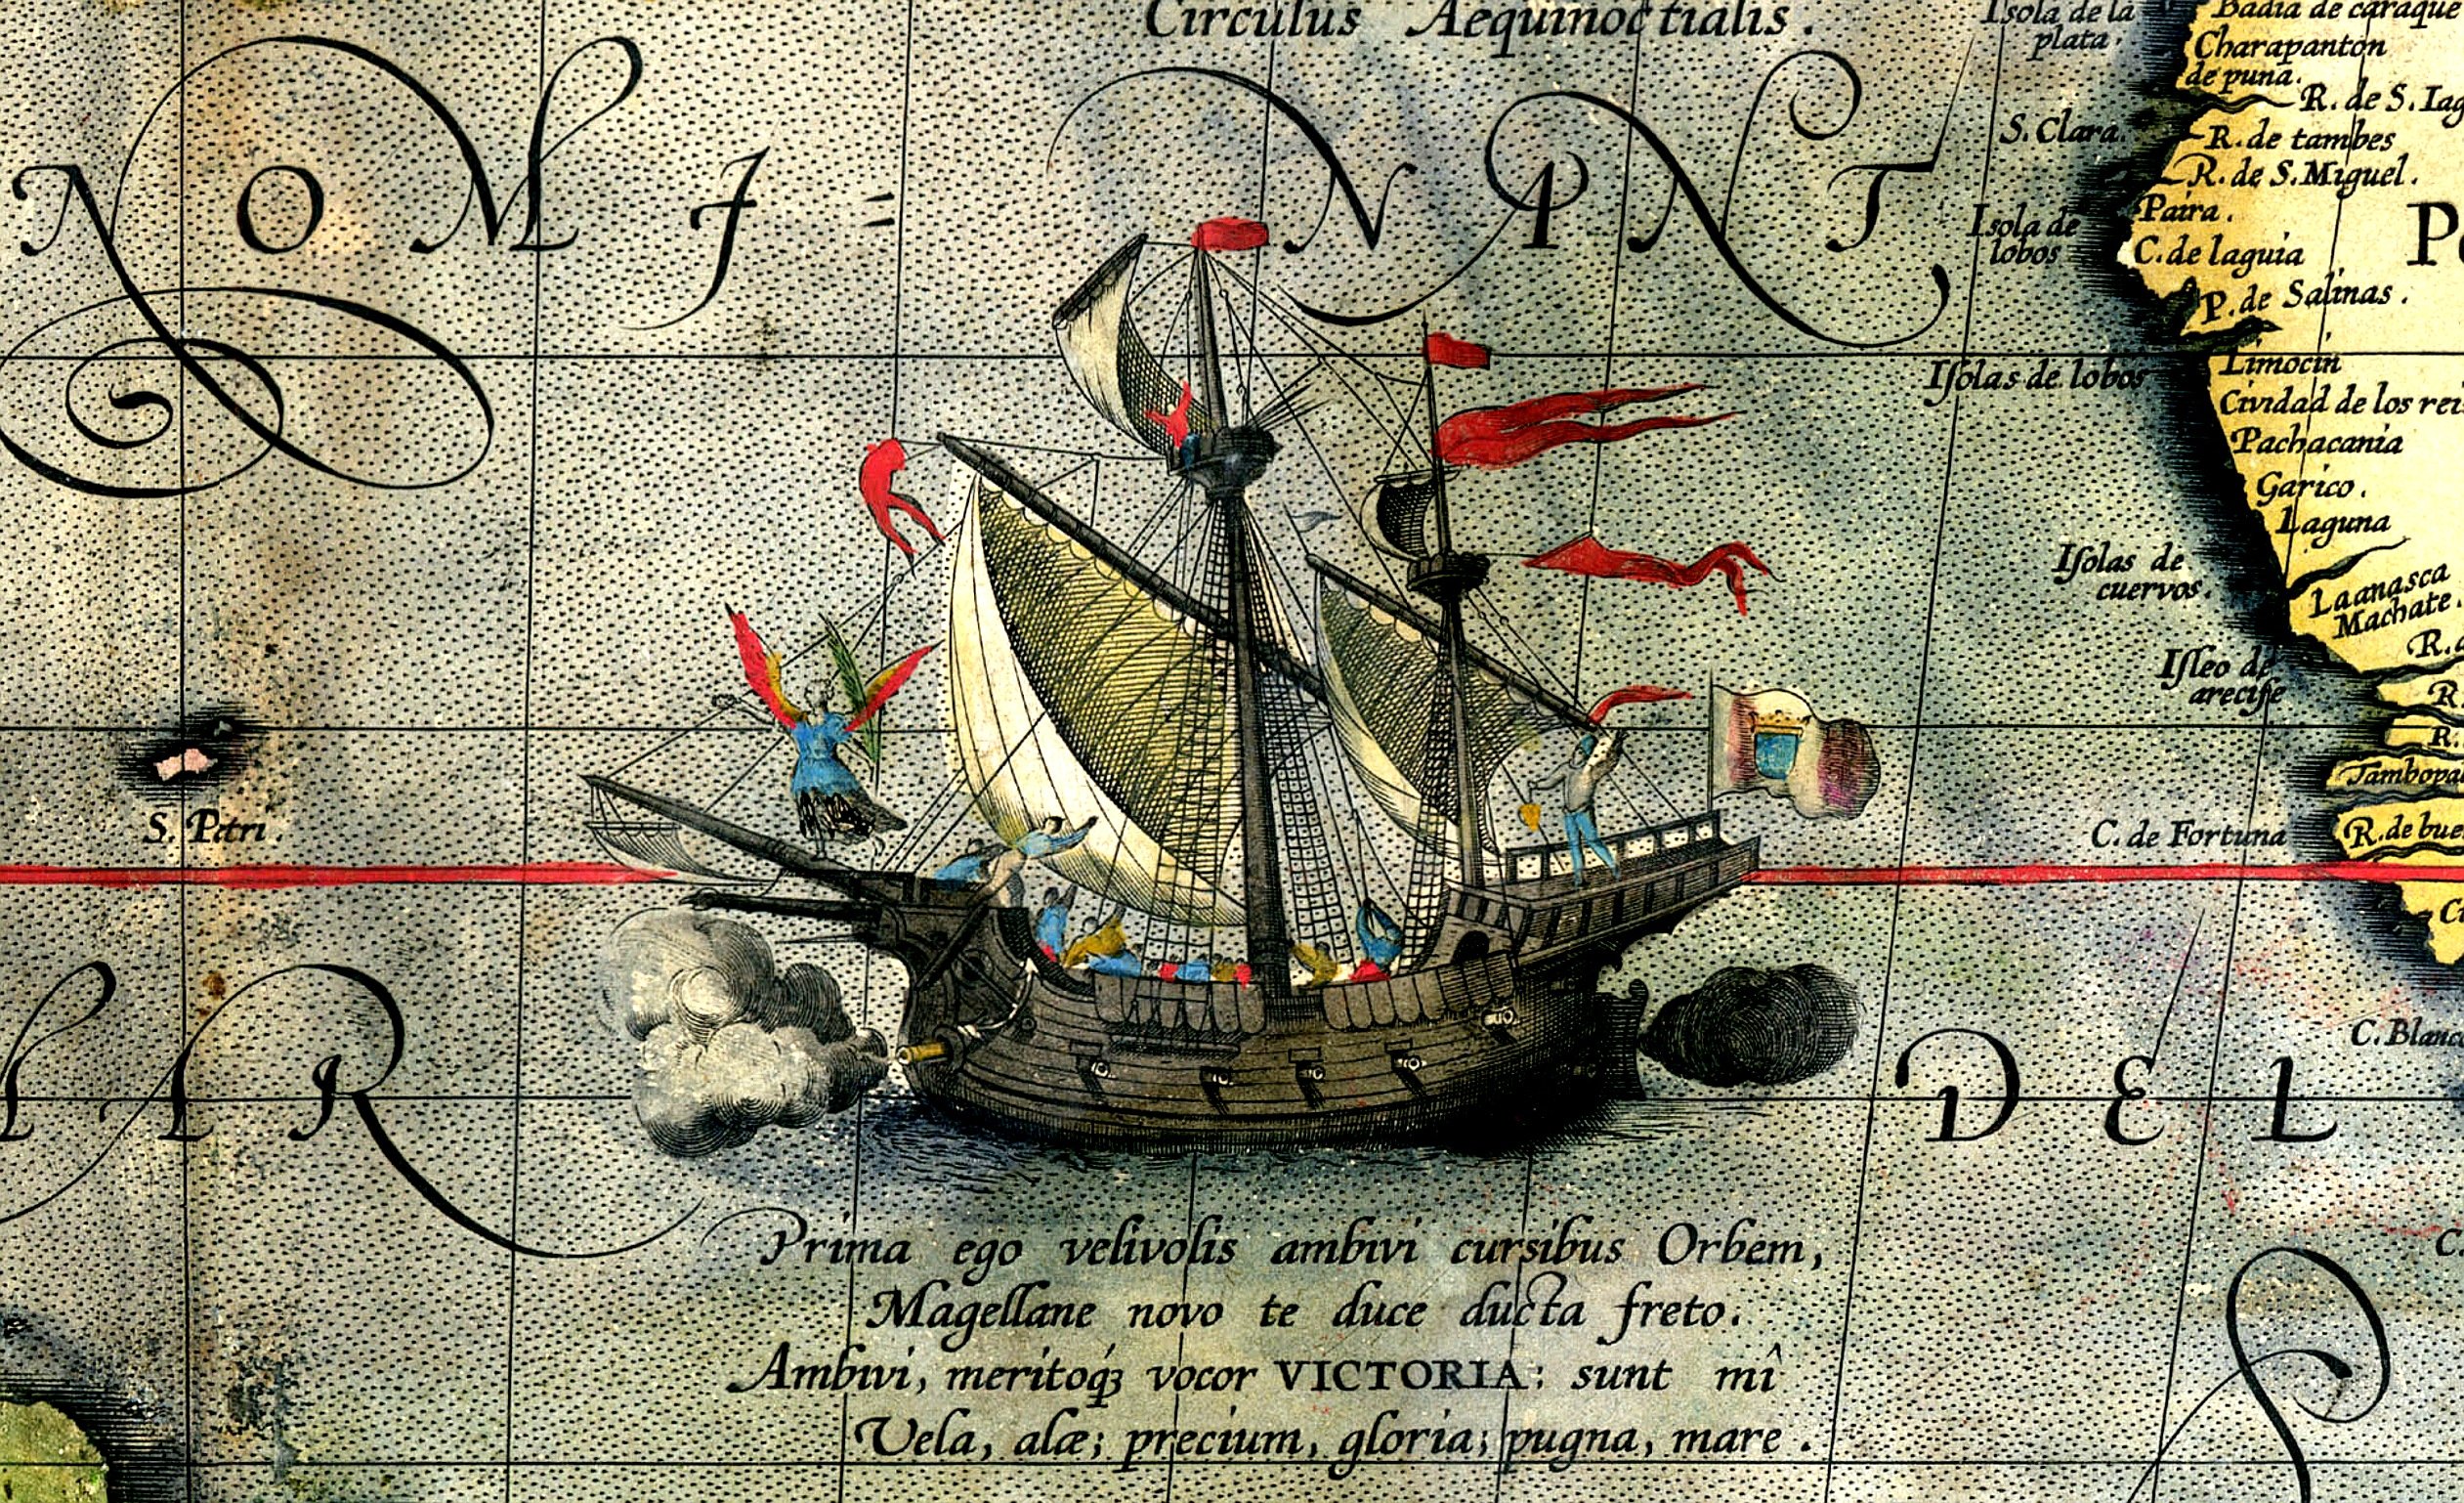 La expedición de circunnavegación de Magallanes/Elcano y la cartografía científica del Estrecho en la Ilustración